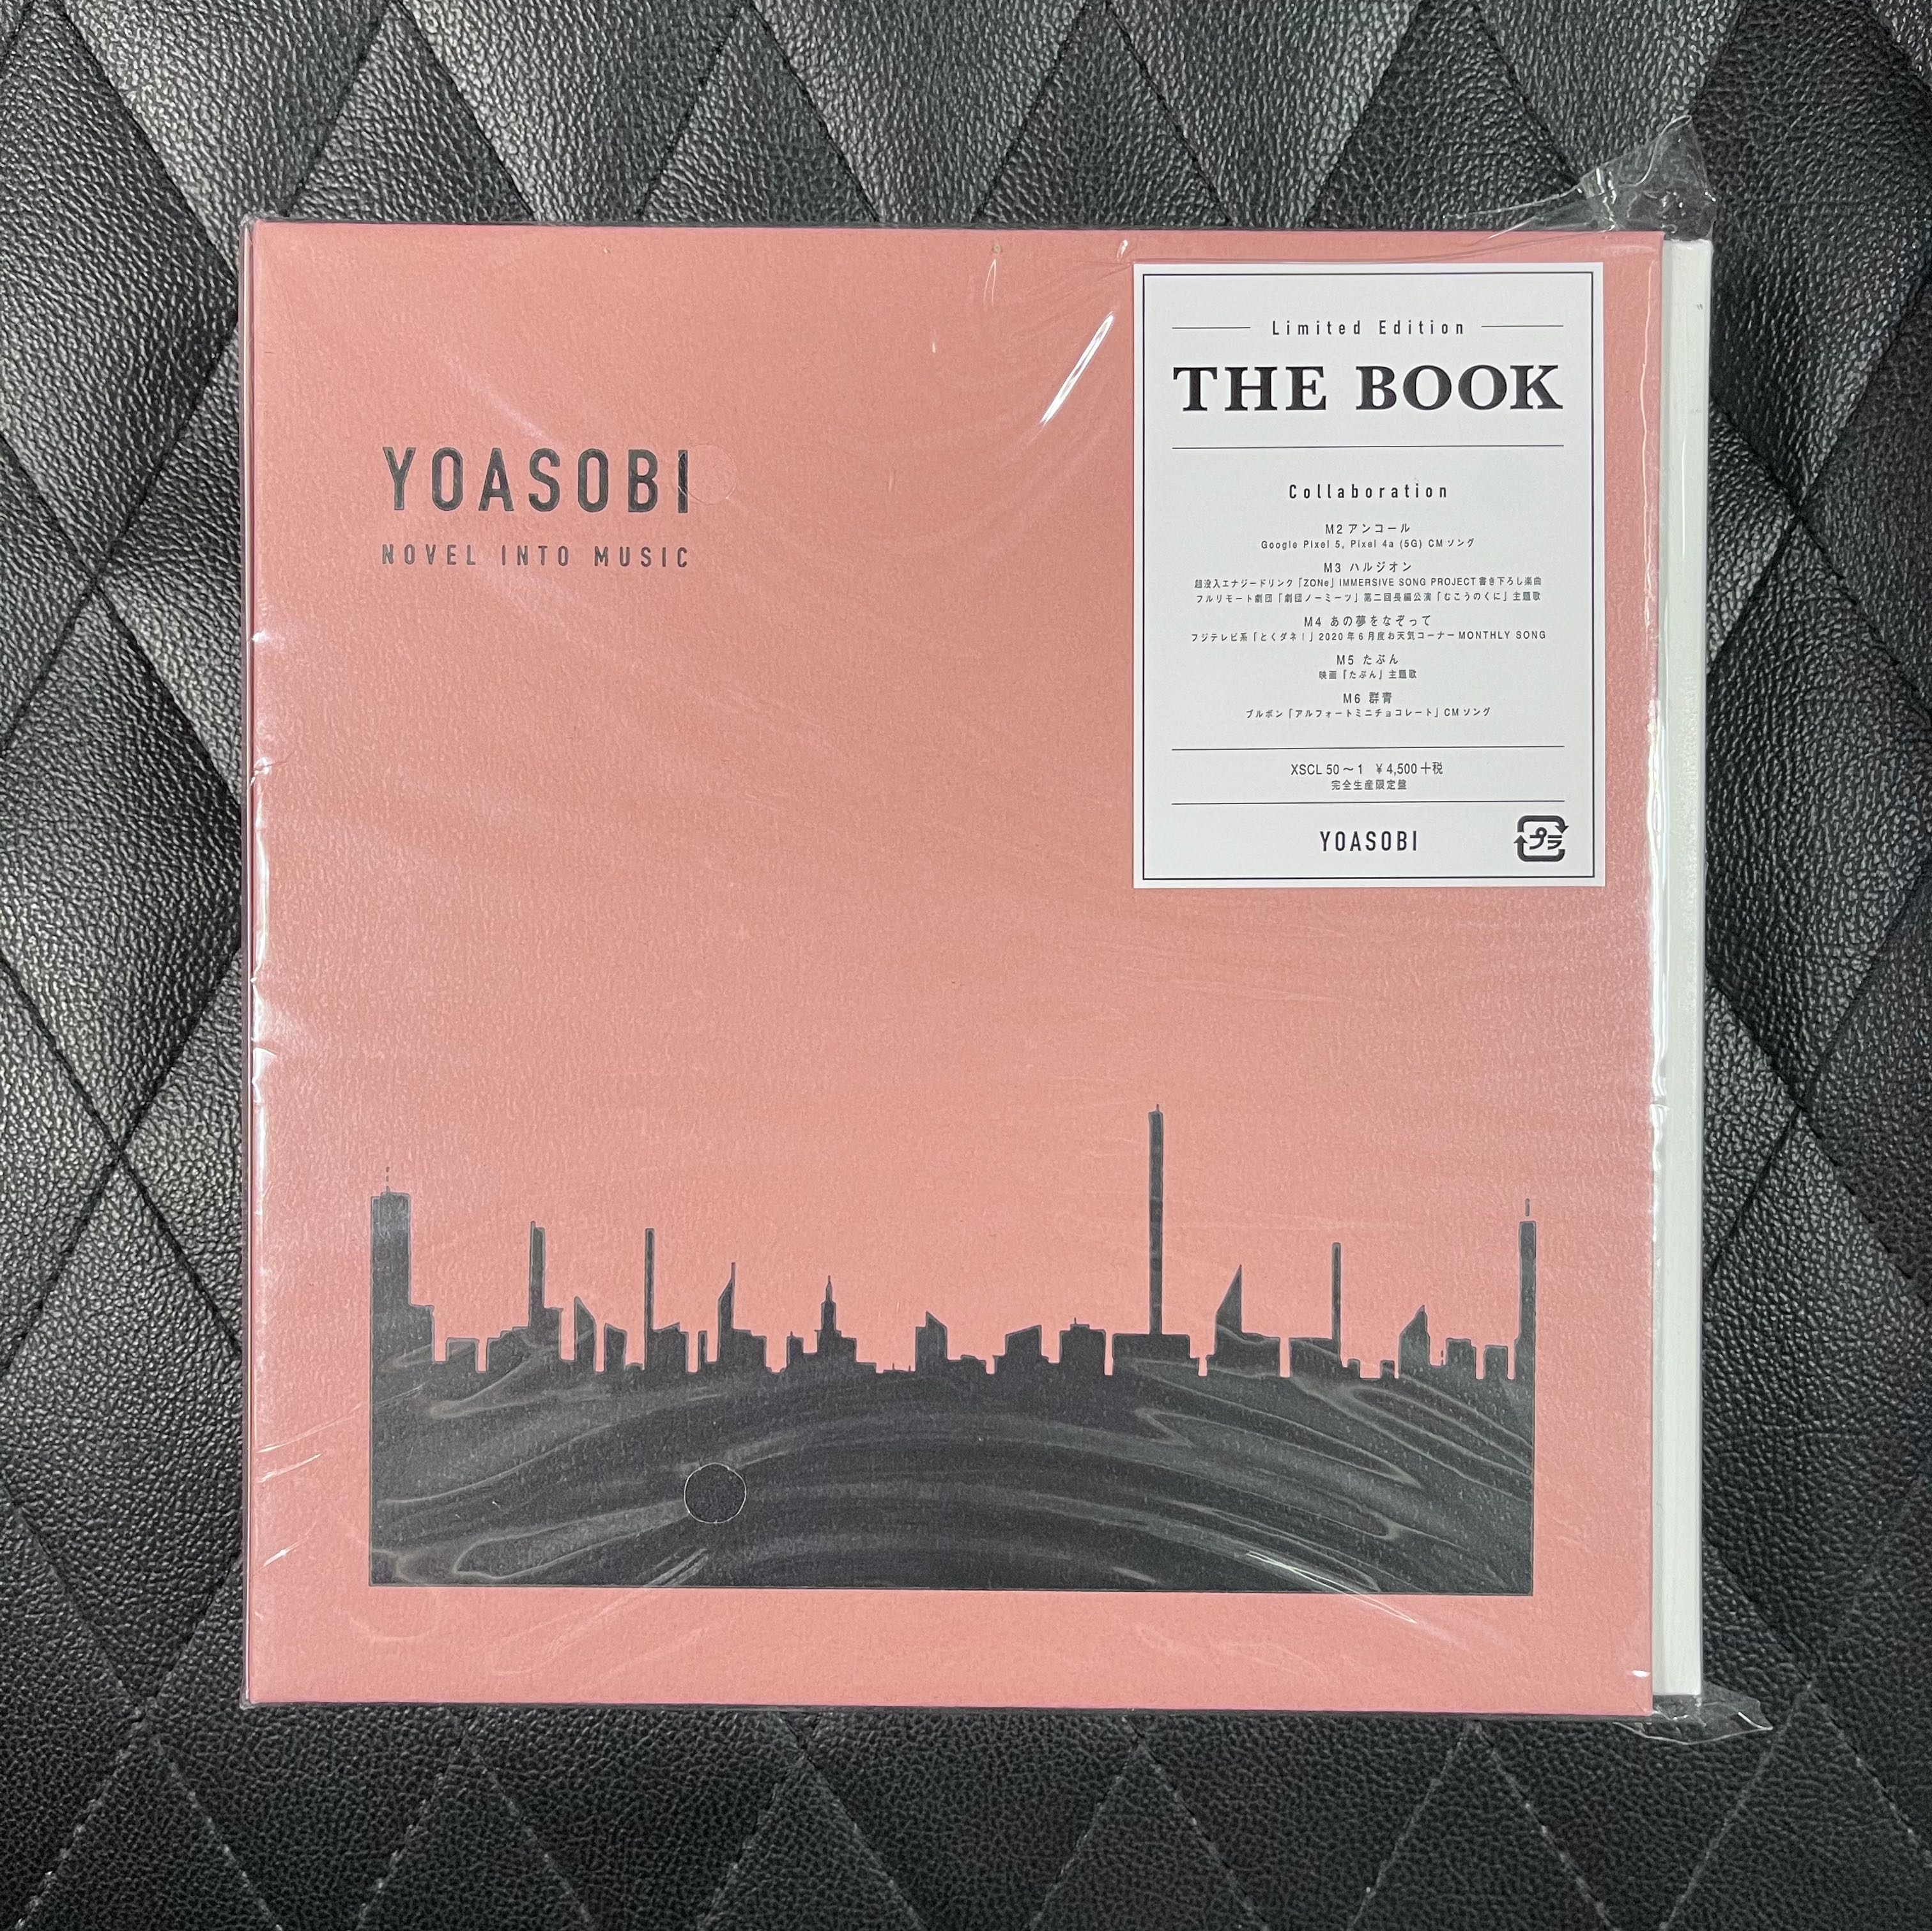 タワーレコード特典付き YOASOBI THE BOOK 完全限定盤 新品未開封